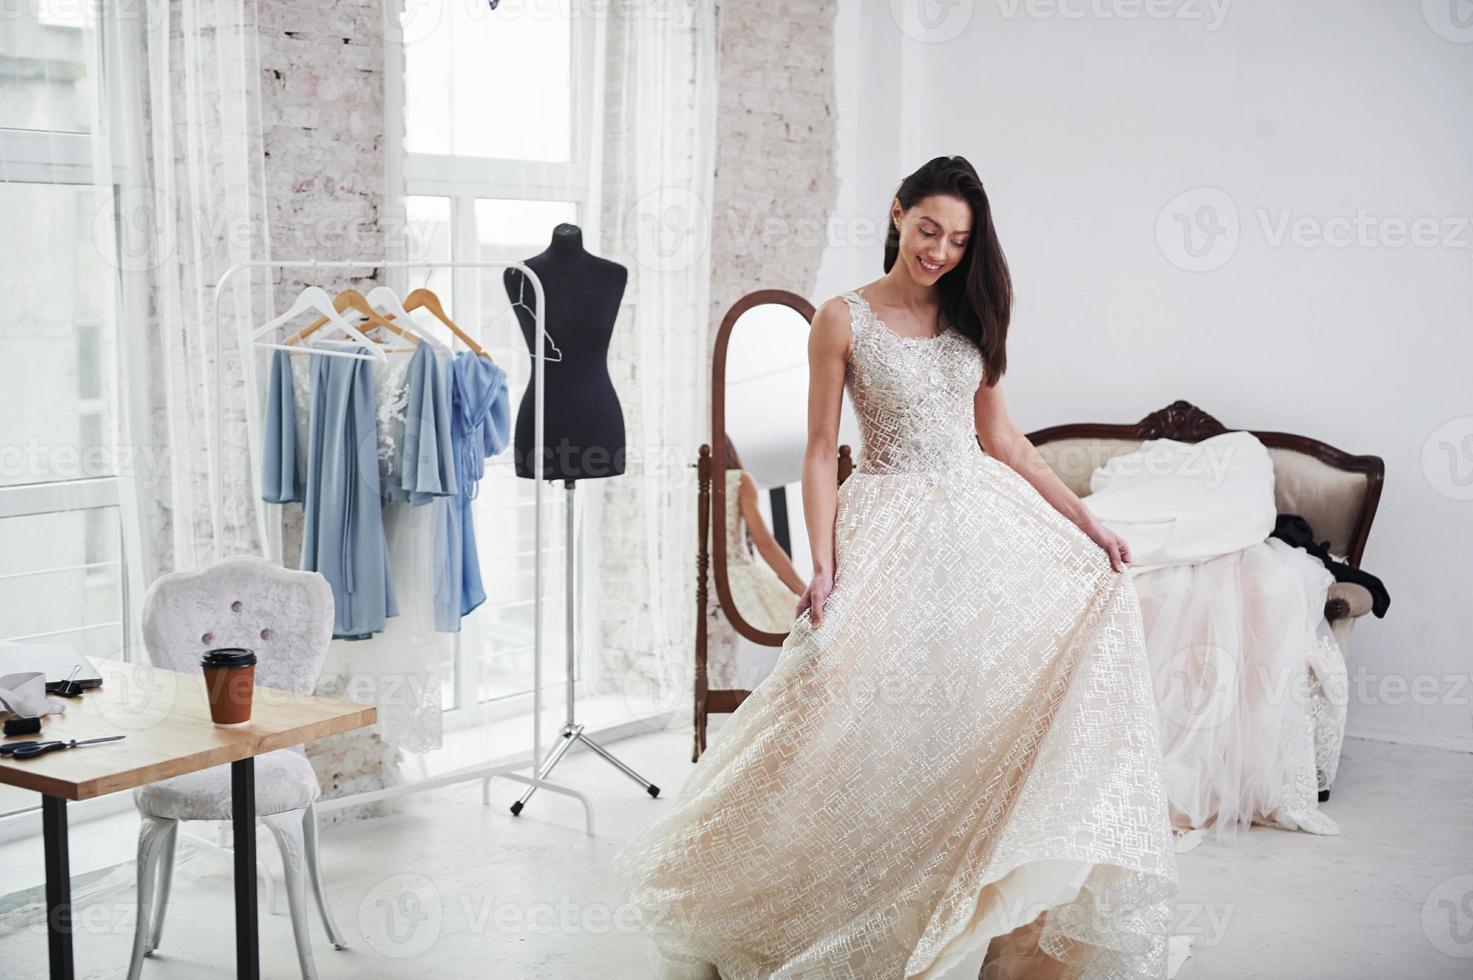 c'est tellement long. le processus d'essayage de la robe dans l'atelier de vêtements fabriqués à la main photo